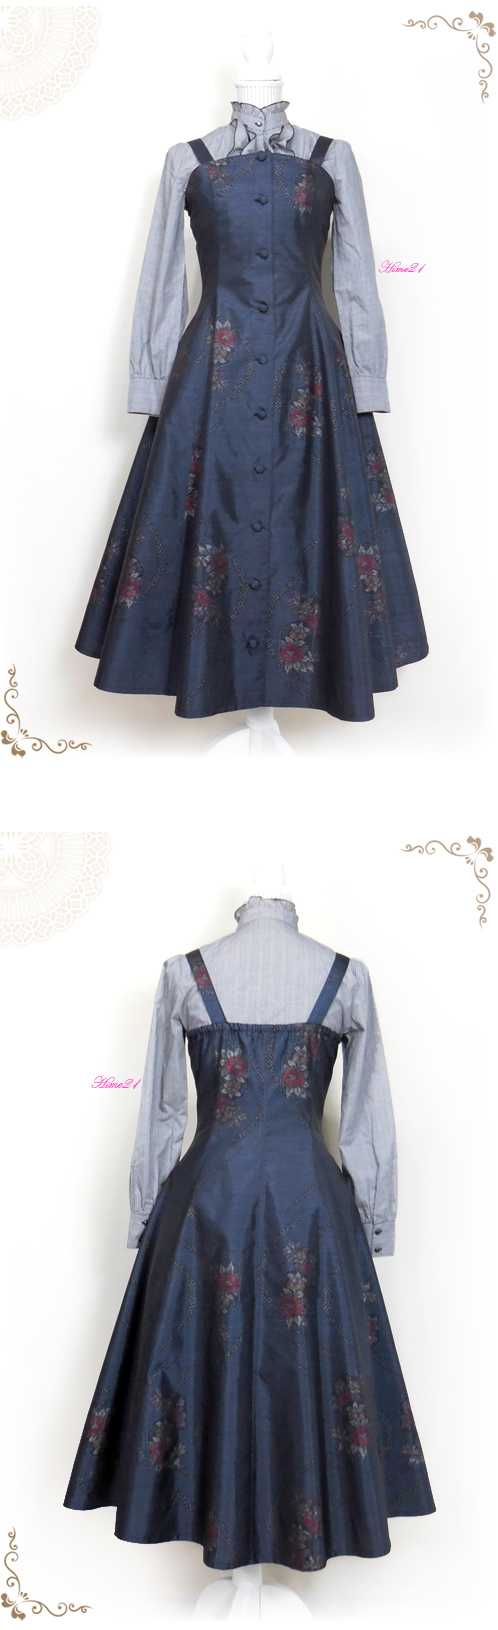 大島紬】プリンセスラインのジャンパースカートとボレロのセット(紺色 